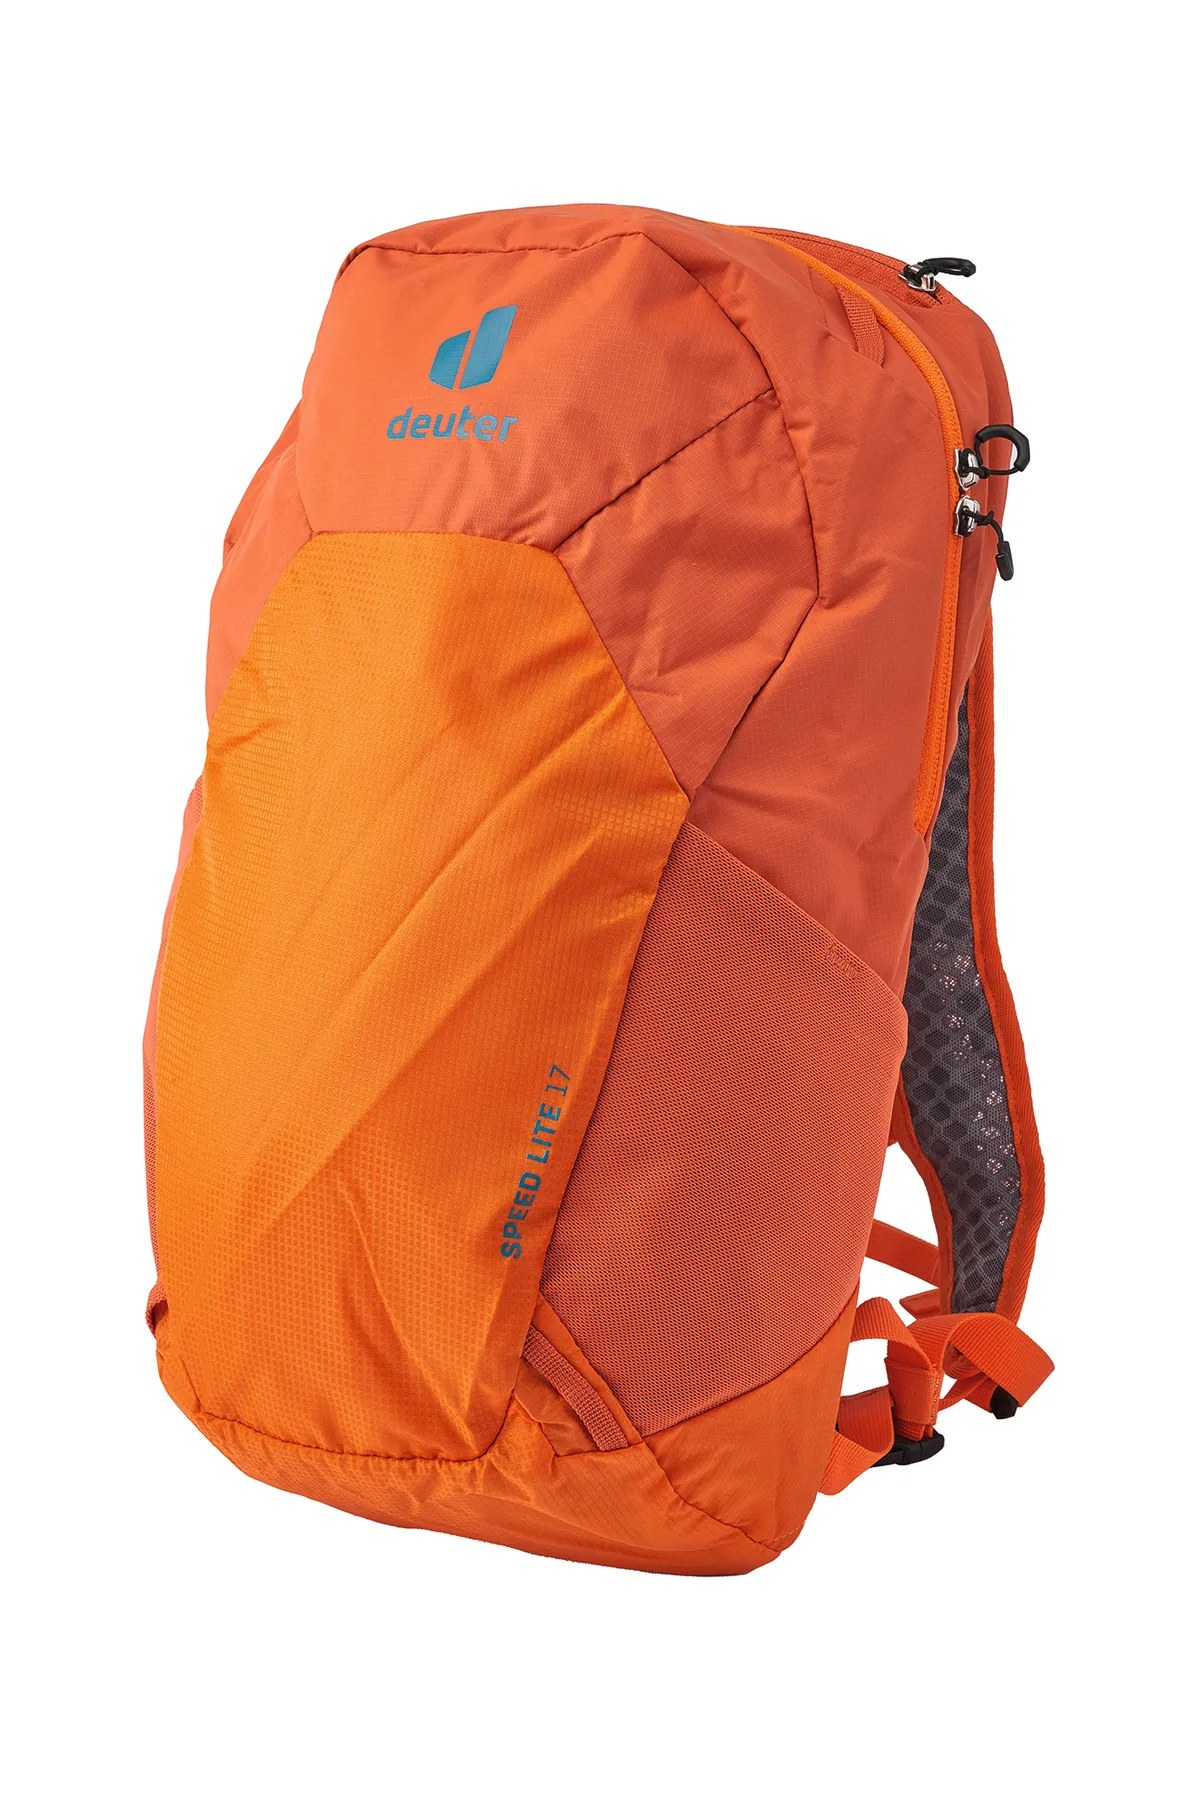 Deuter Speed Lite backpack